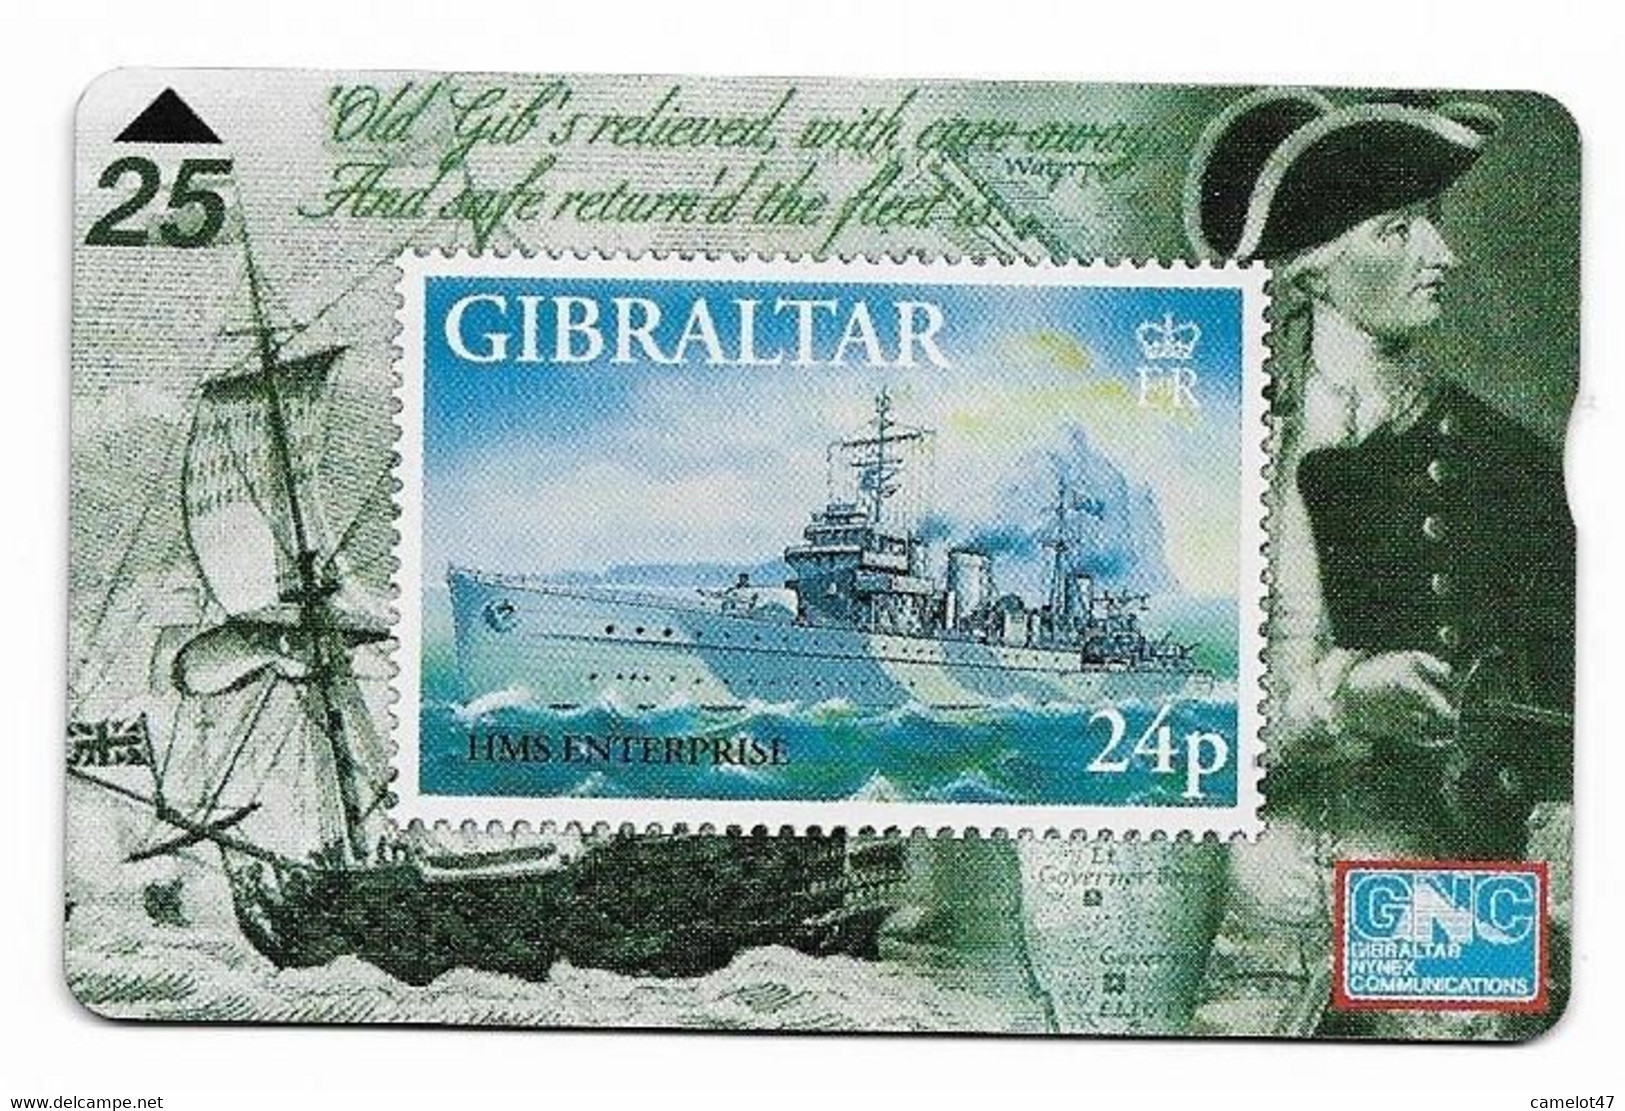 Gibraltar, GNC Phone Card, Mint Condition, No Value, Collectors Item, # Gibraltar-21 - Gibraltar